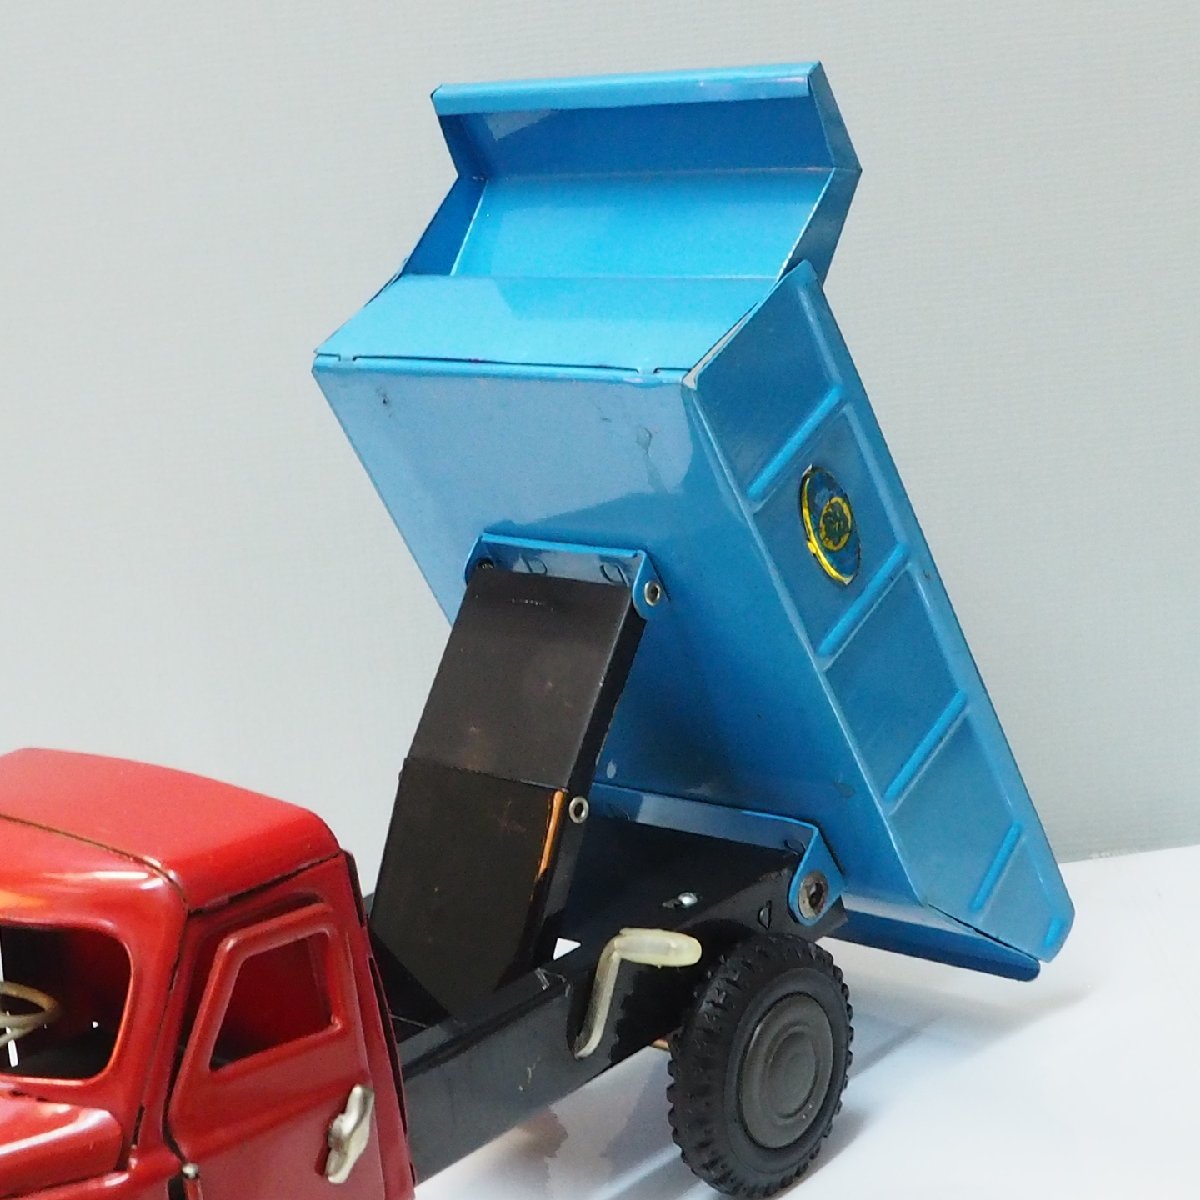  maru солнечный [ja Ian to три колесо самосвал грузовик красный красный / бледно-голубой голубой Giant DUMP TRUCK сила нет ] жестяная пластина автомобиль TIN TOY CAR#MARUSAN[ без коробки ]0603